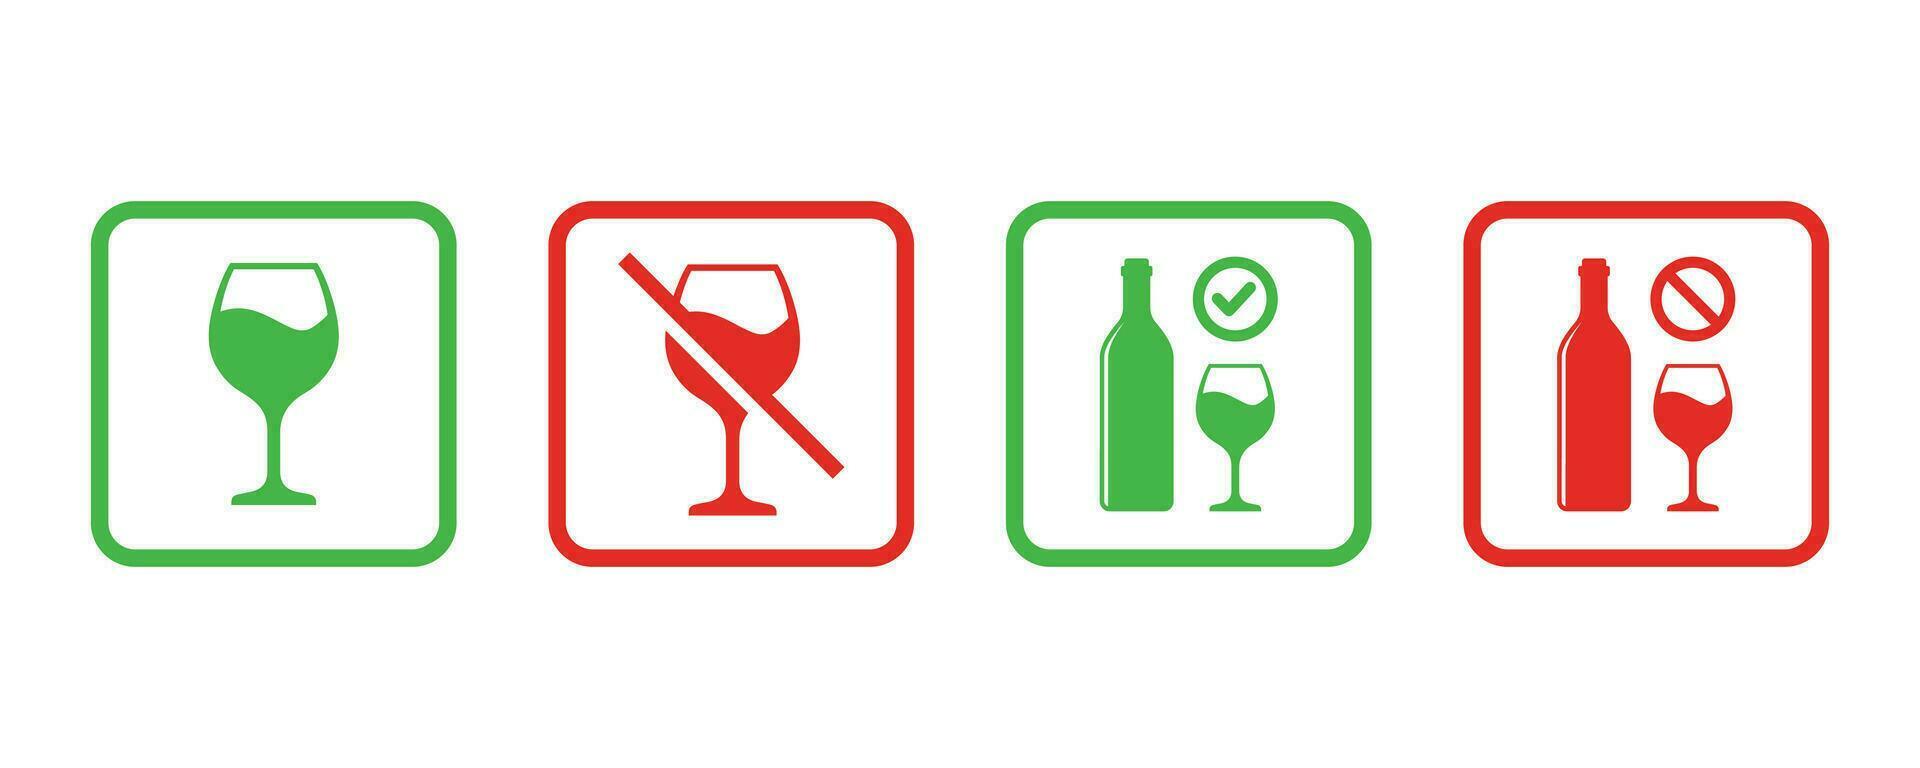 Nee alcohol teken en alcohol toegestaan teken symbool vector illustratie. verbod teken reeks voor alcohol. vector illustratie